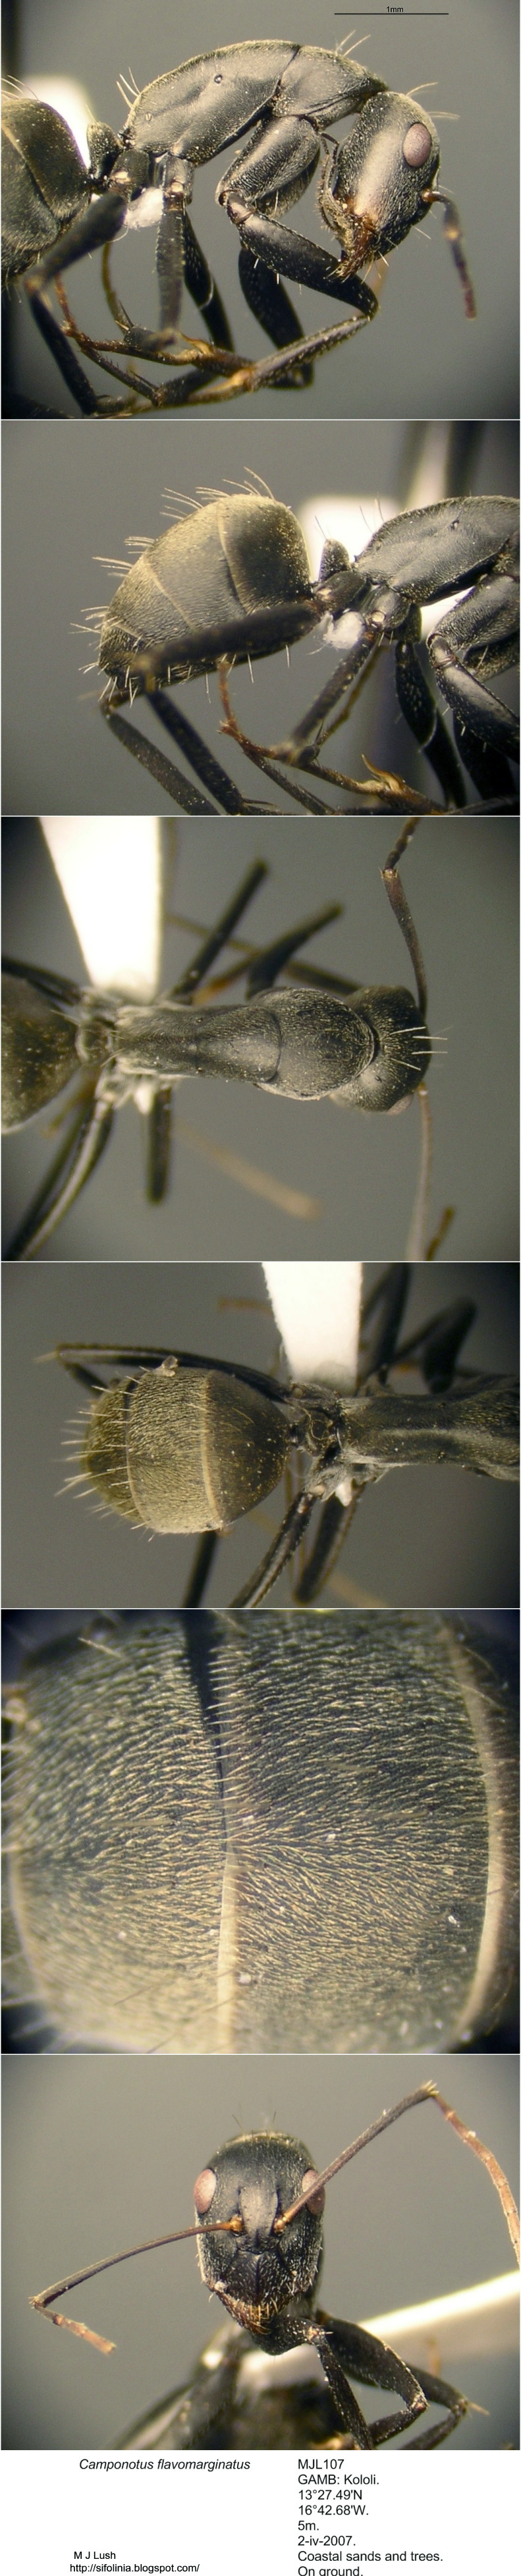 {Camponotus flavomarginatus gambia}